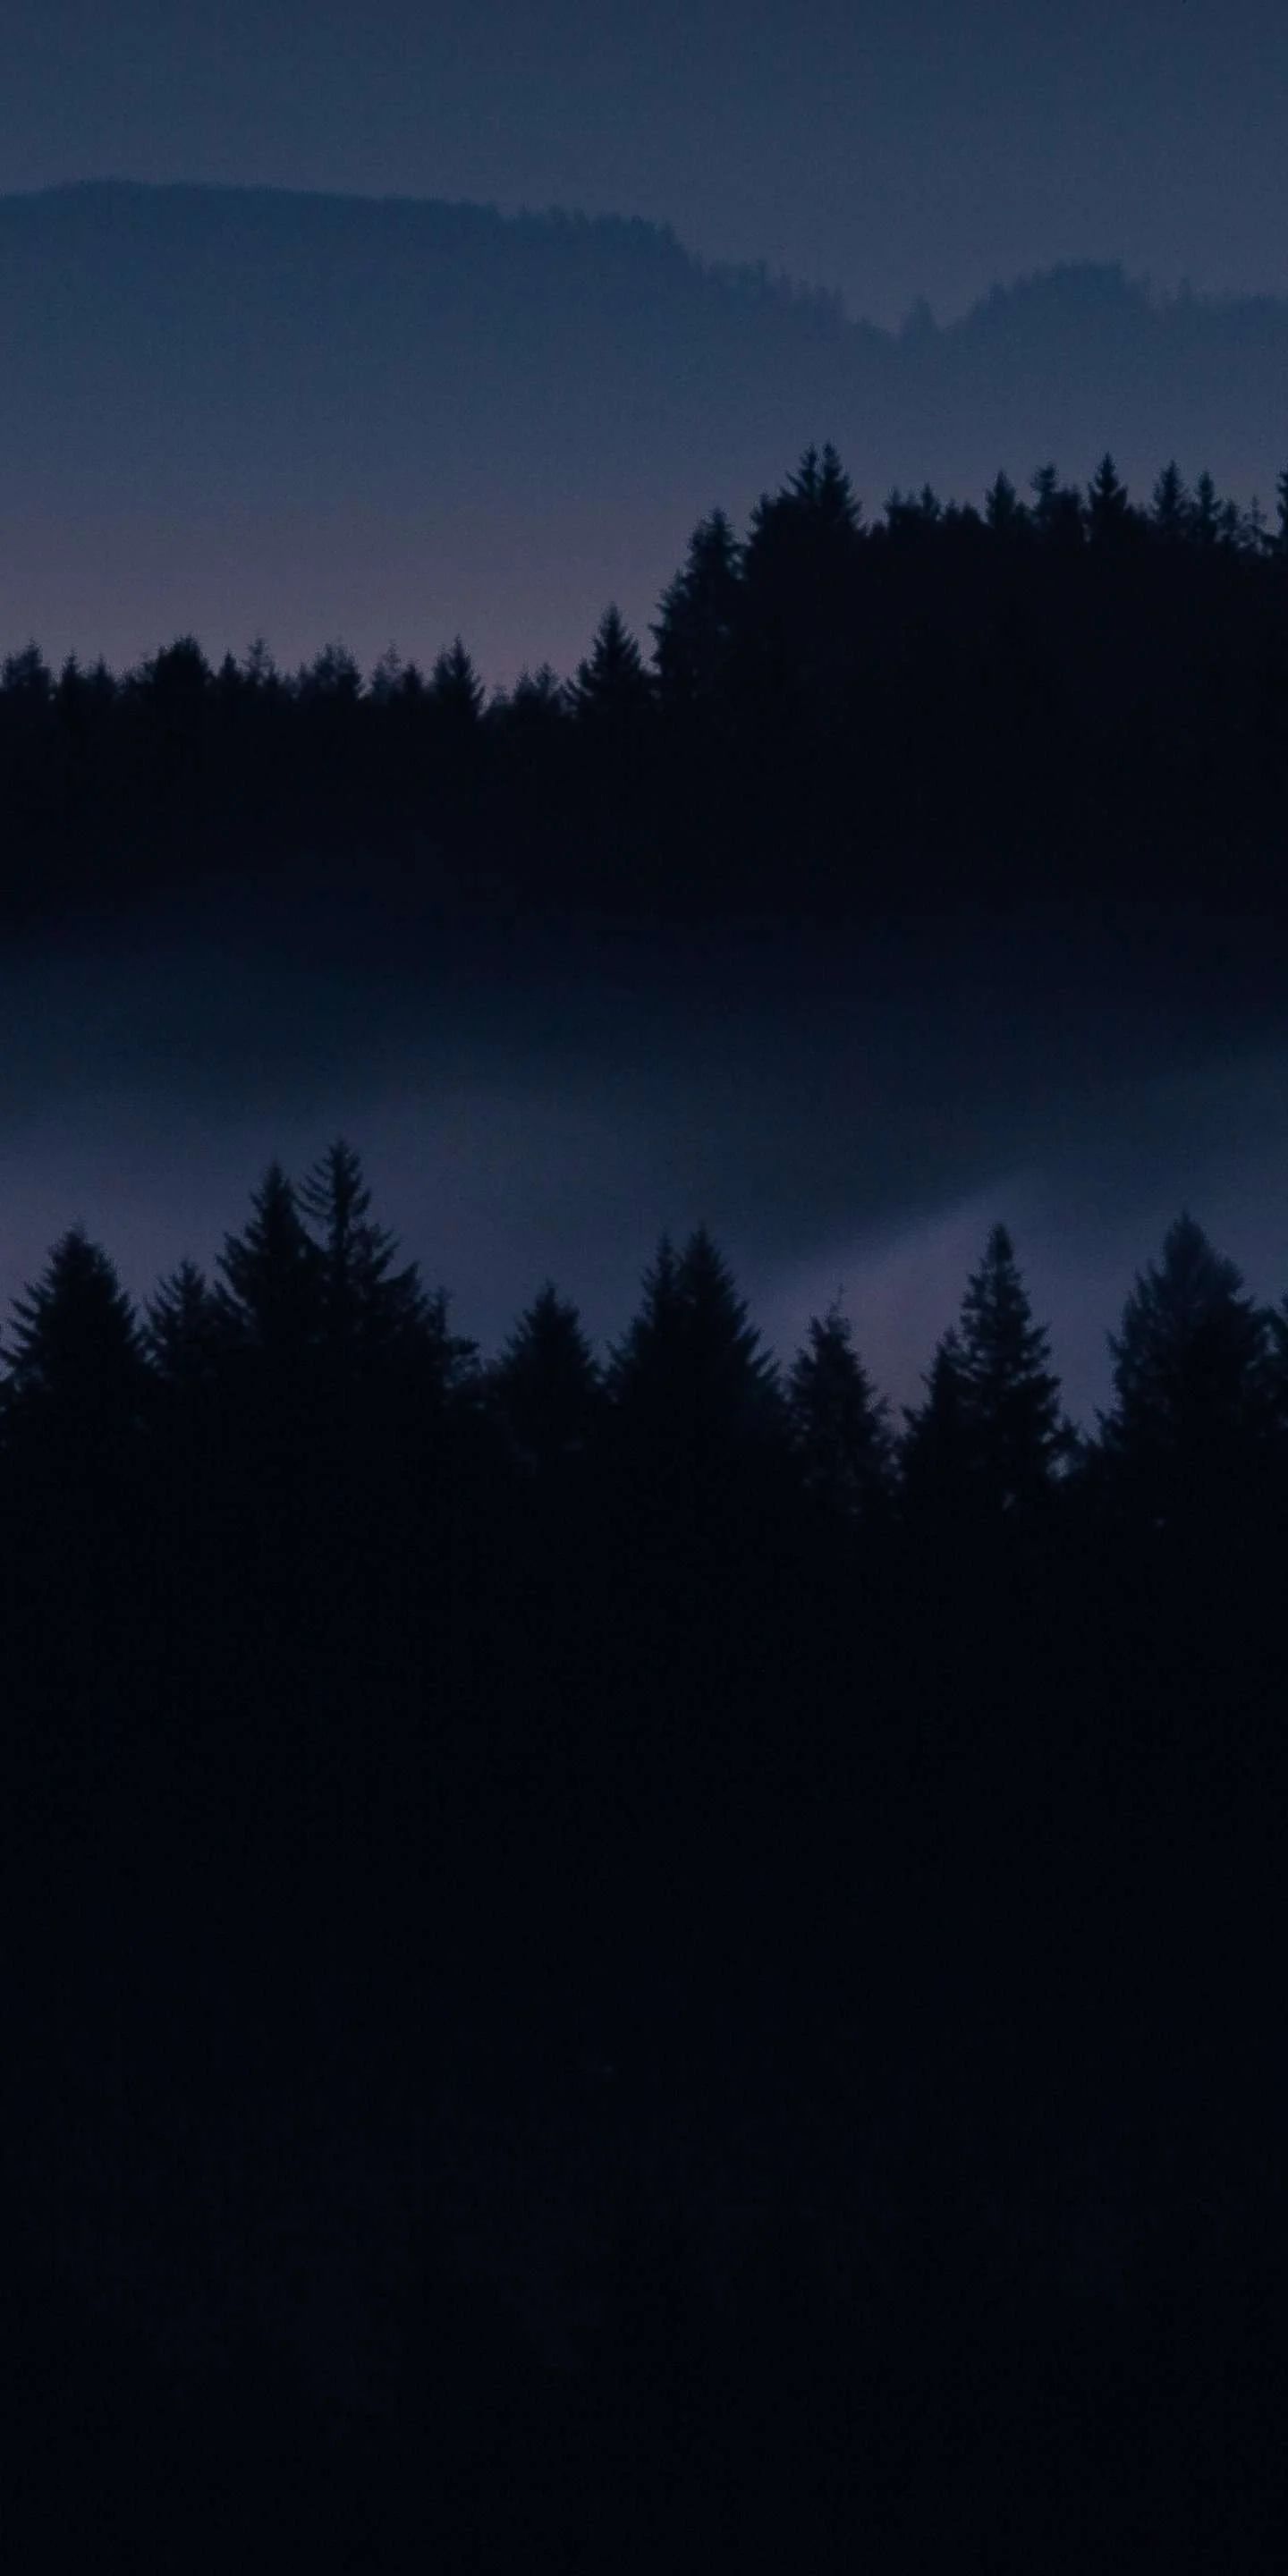 A dark sky with fog and trees - Creepy